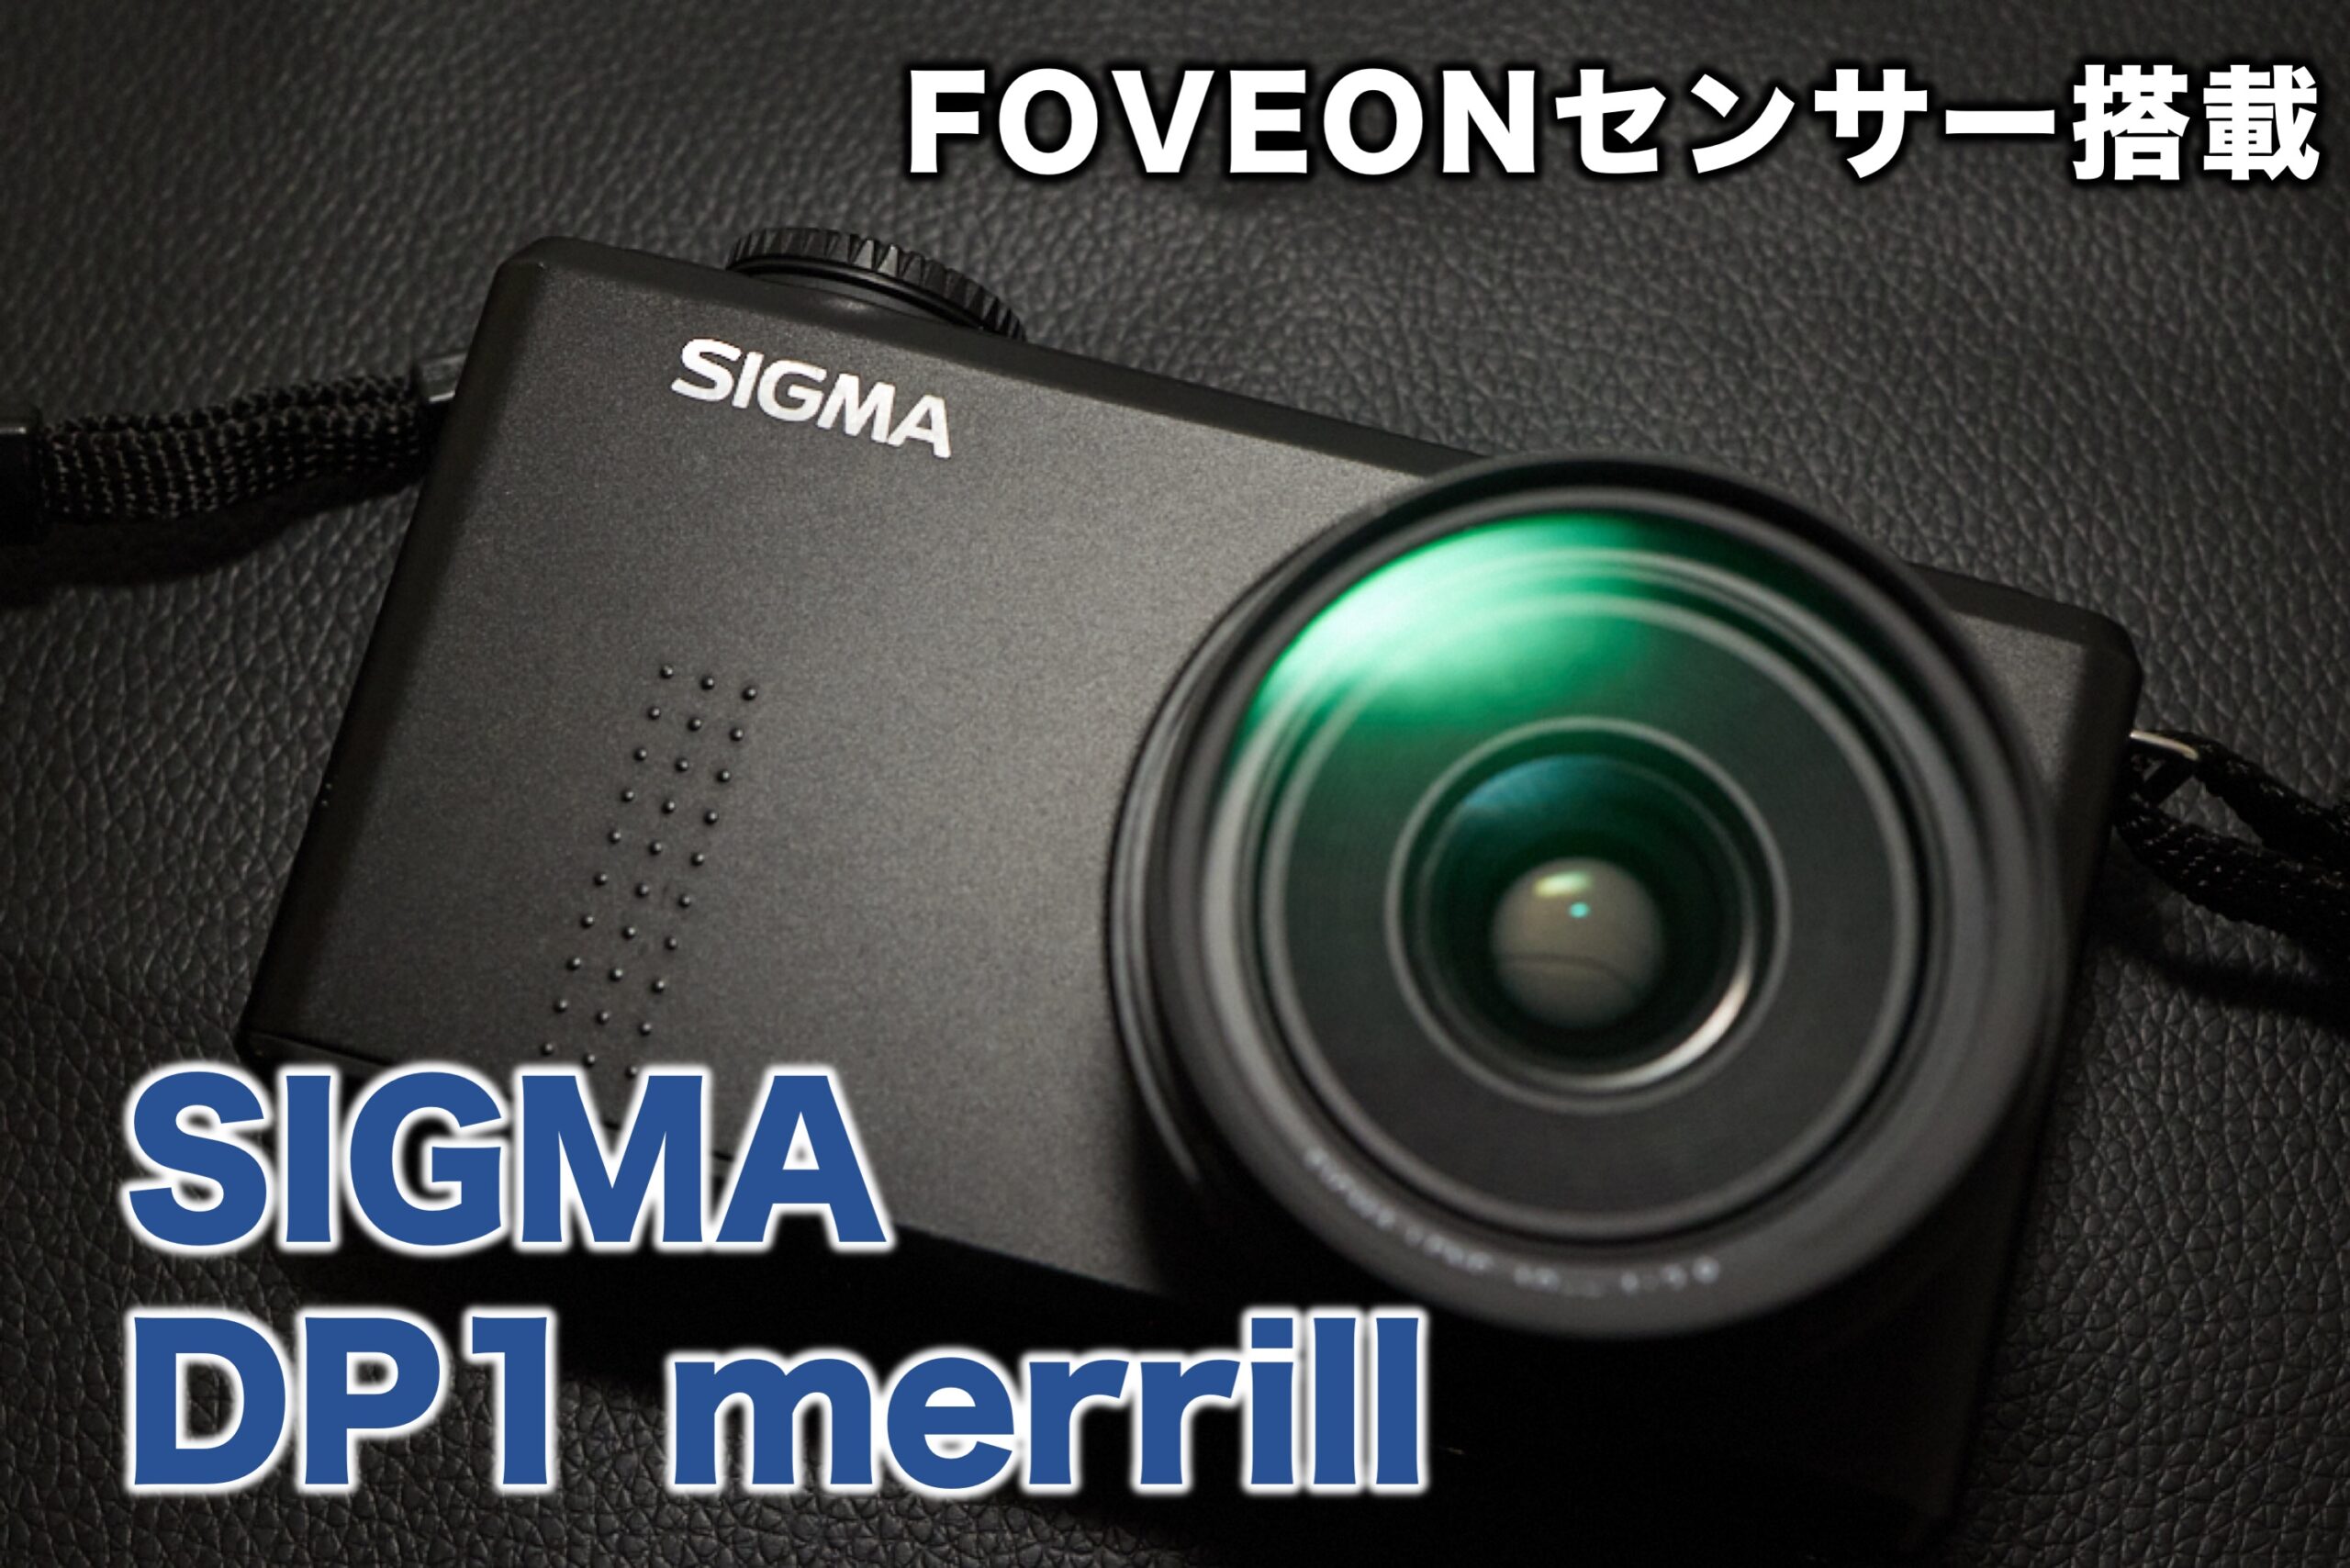 【レビュー】FOVEONセンサー搭載機 SIGMA DP1 merrill の使用感